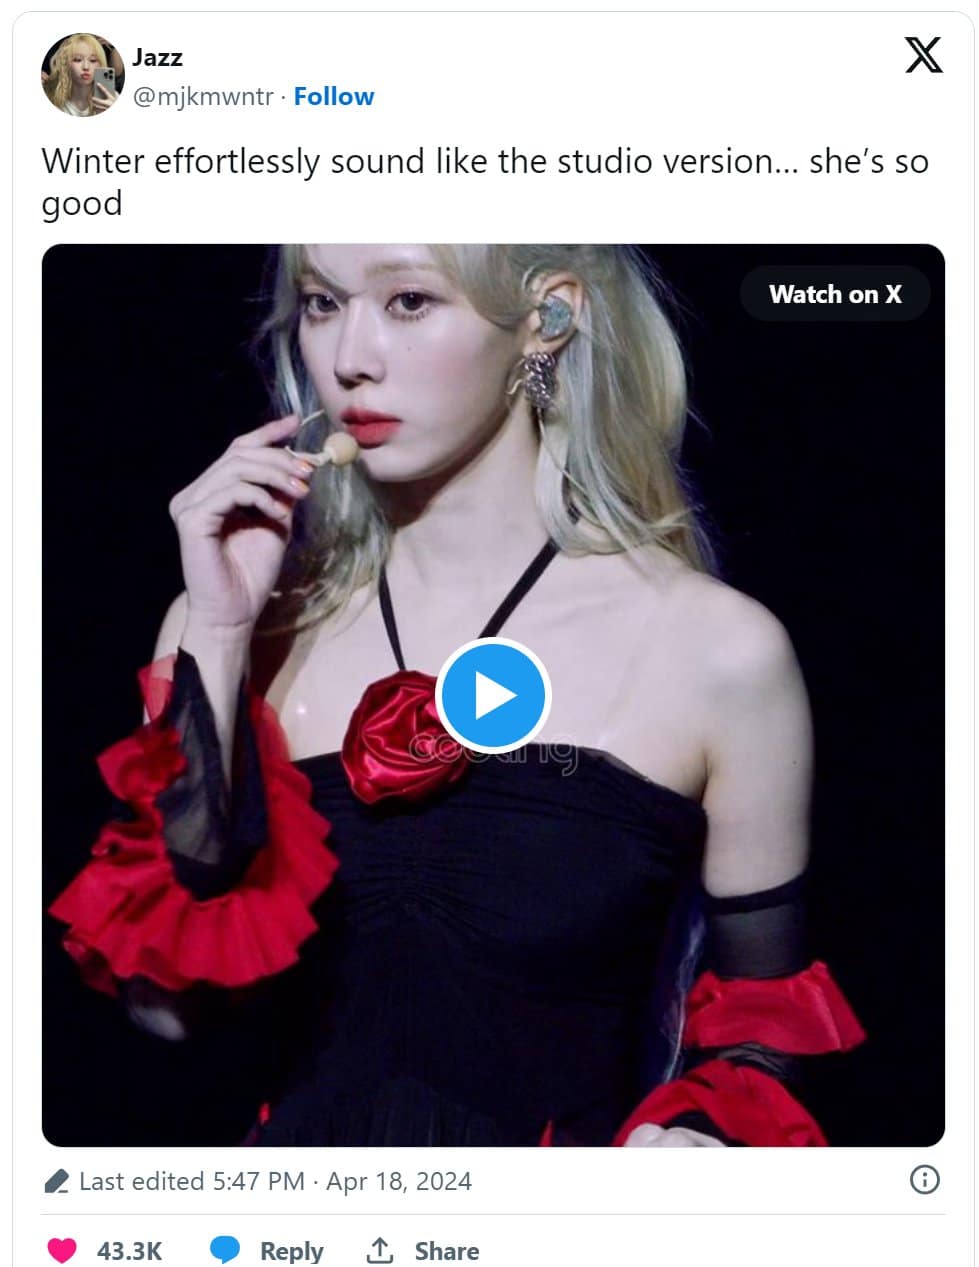 "Она дар небес для К-поп индустрии!" вокалистка поет вживую так же, как в студии, и это сводит фанатов с ума